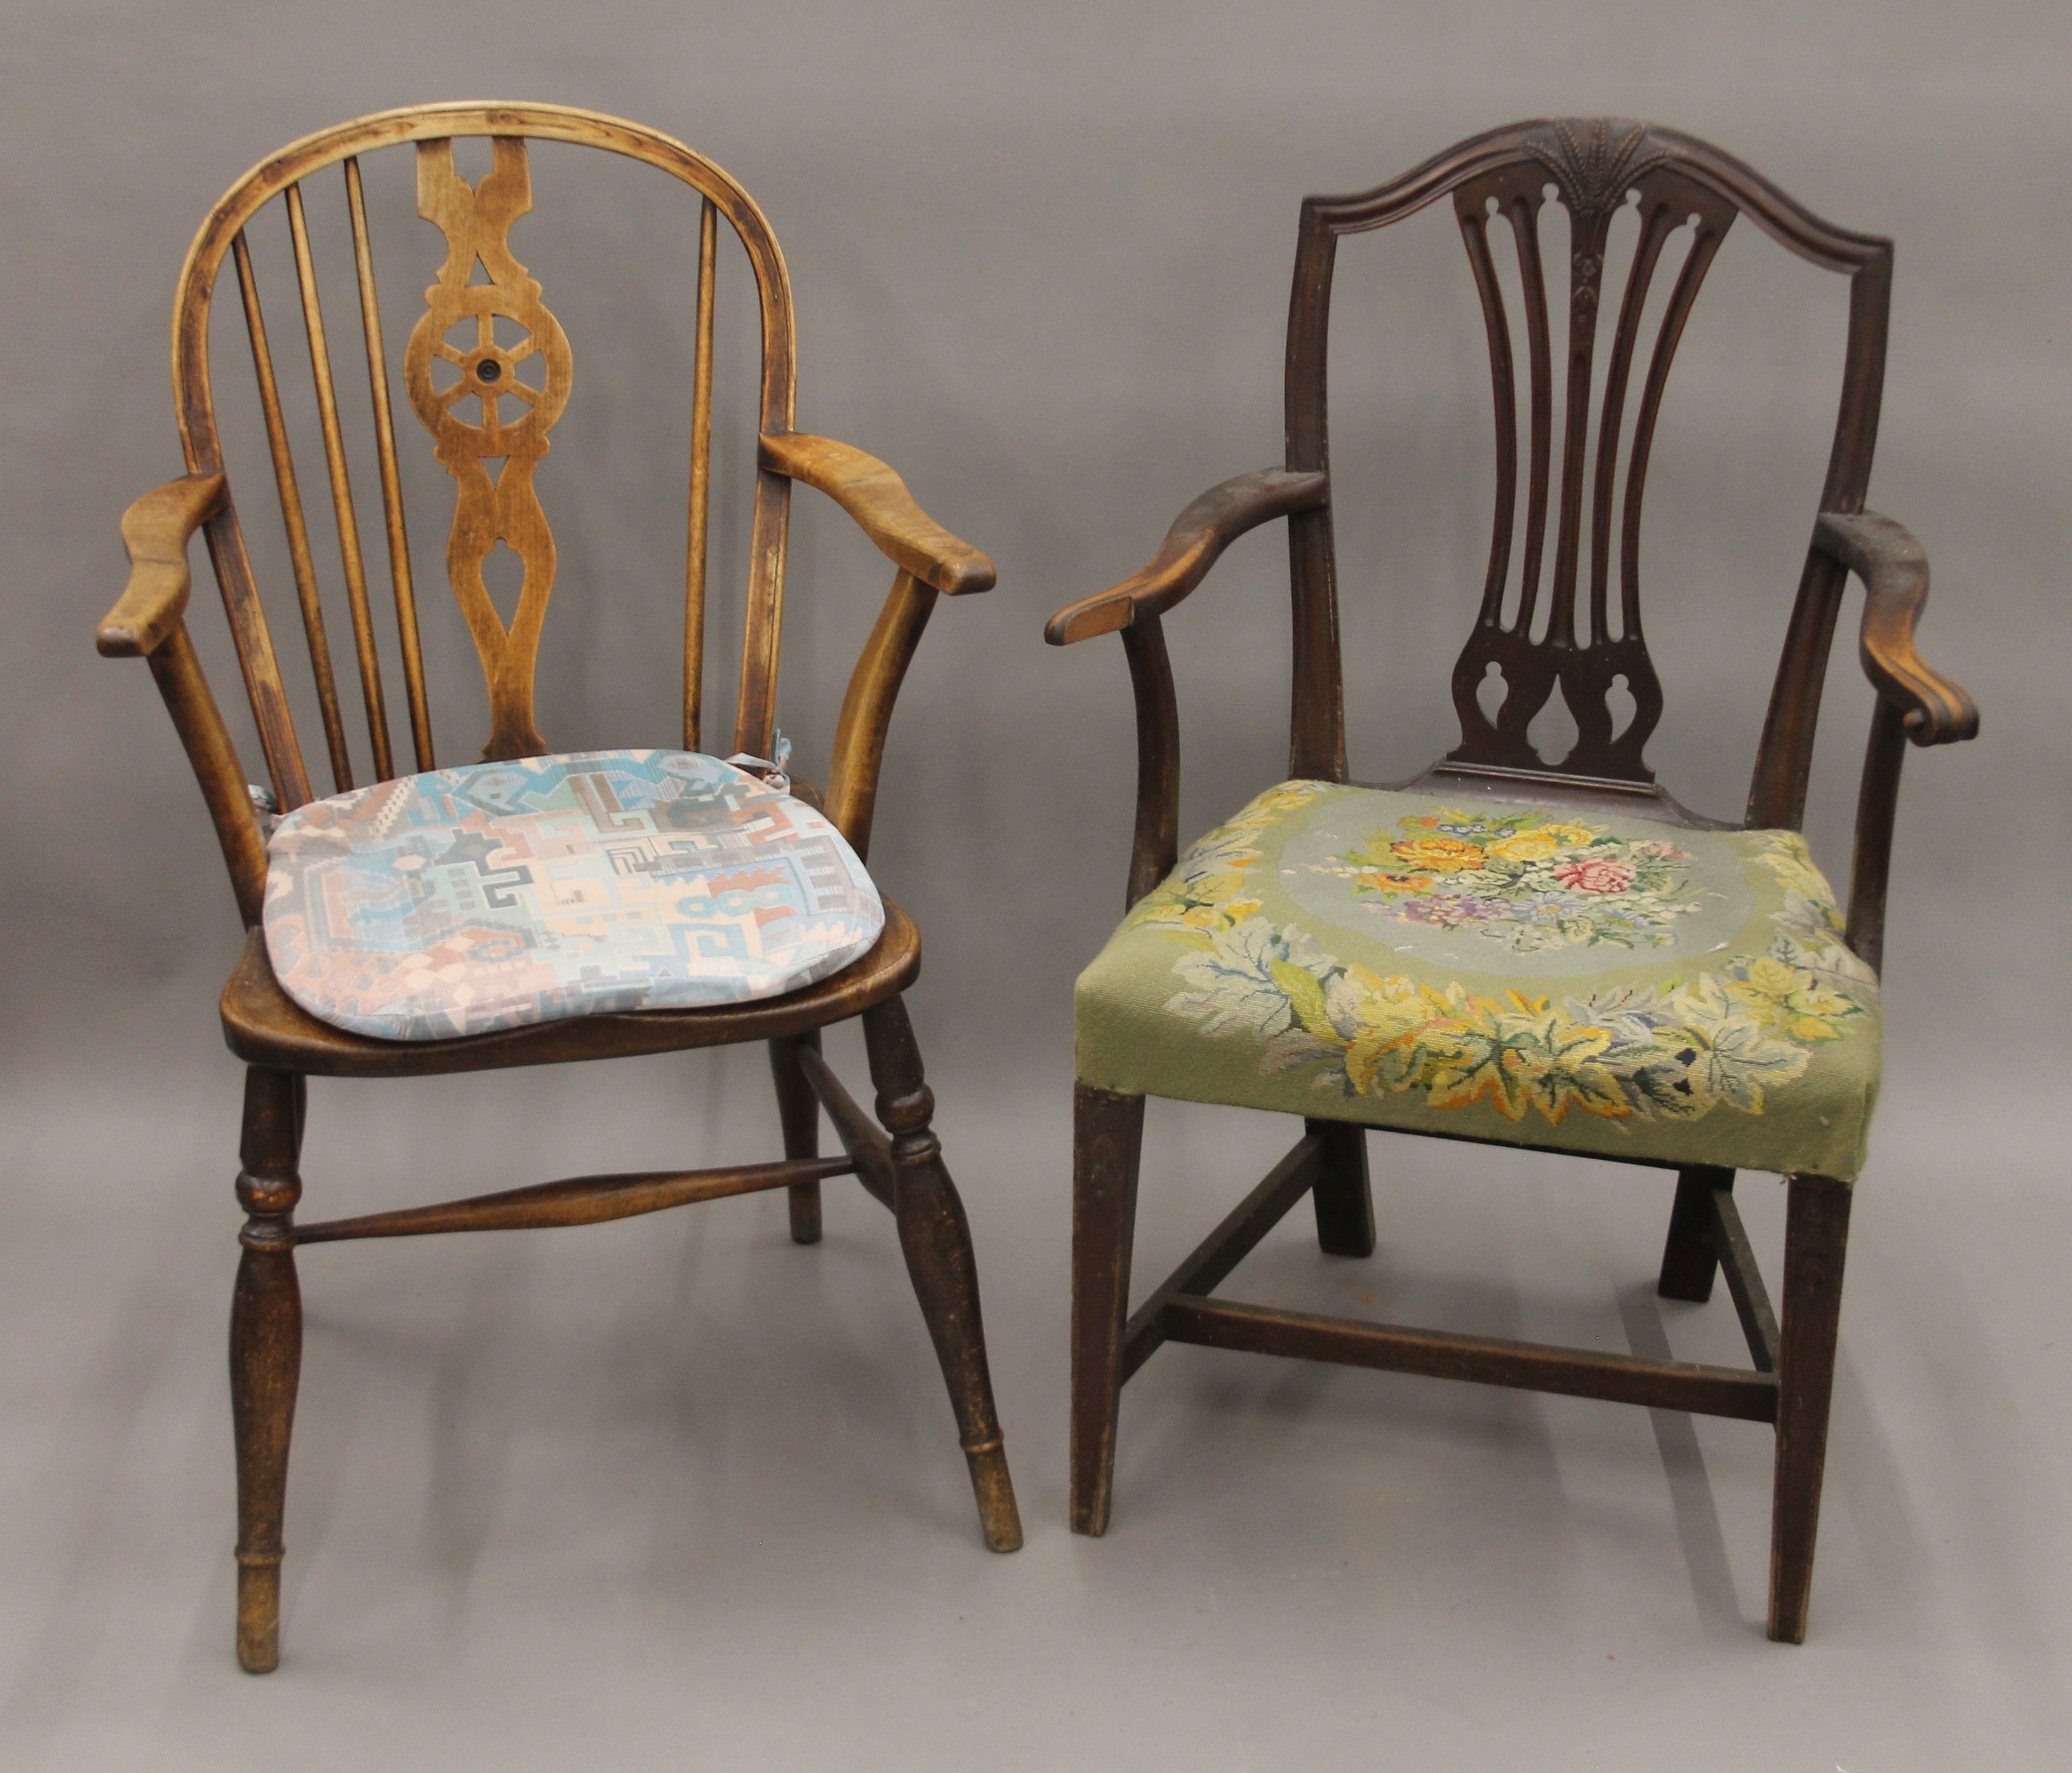 A 19th century elm seated wheel back armchair and a 19th century mahogany shield back open armchair.